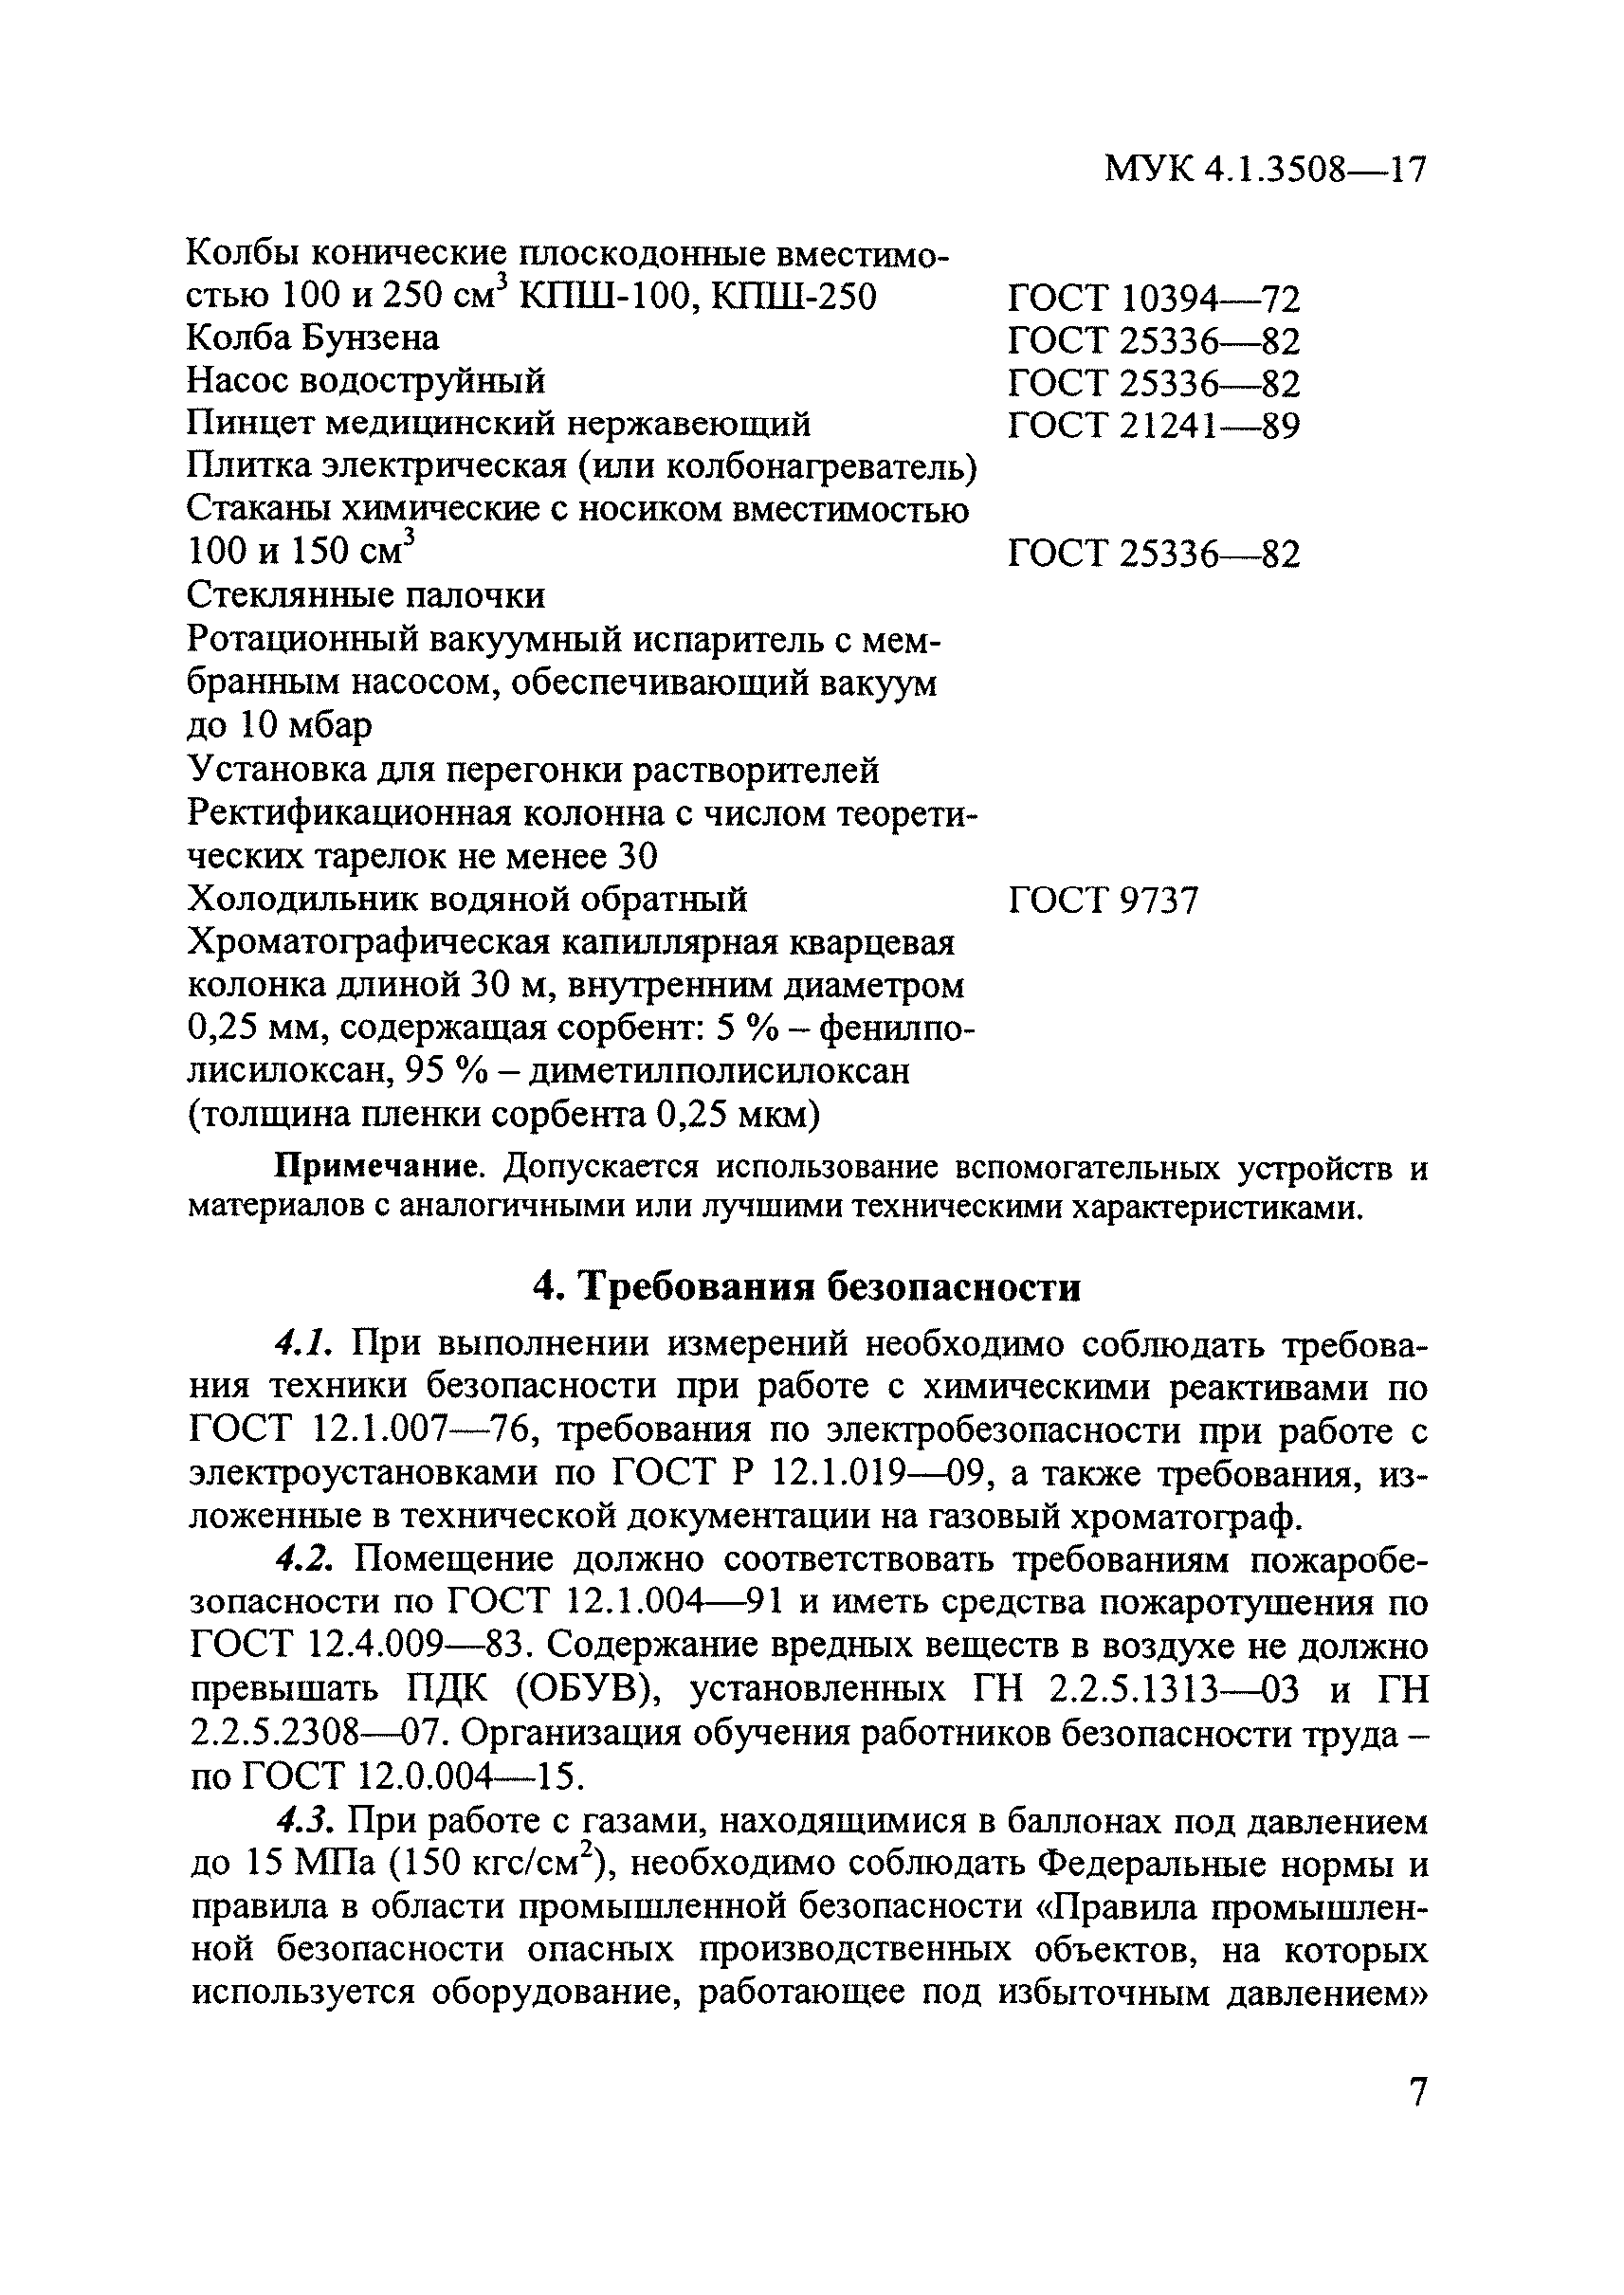 МУК 4.1.3508-17